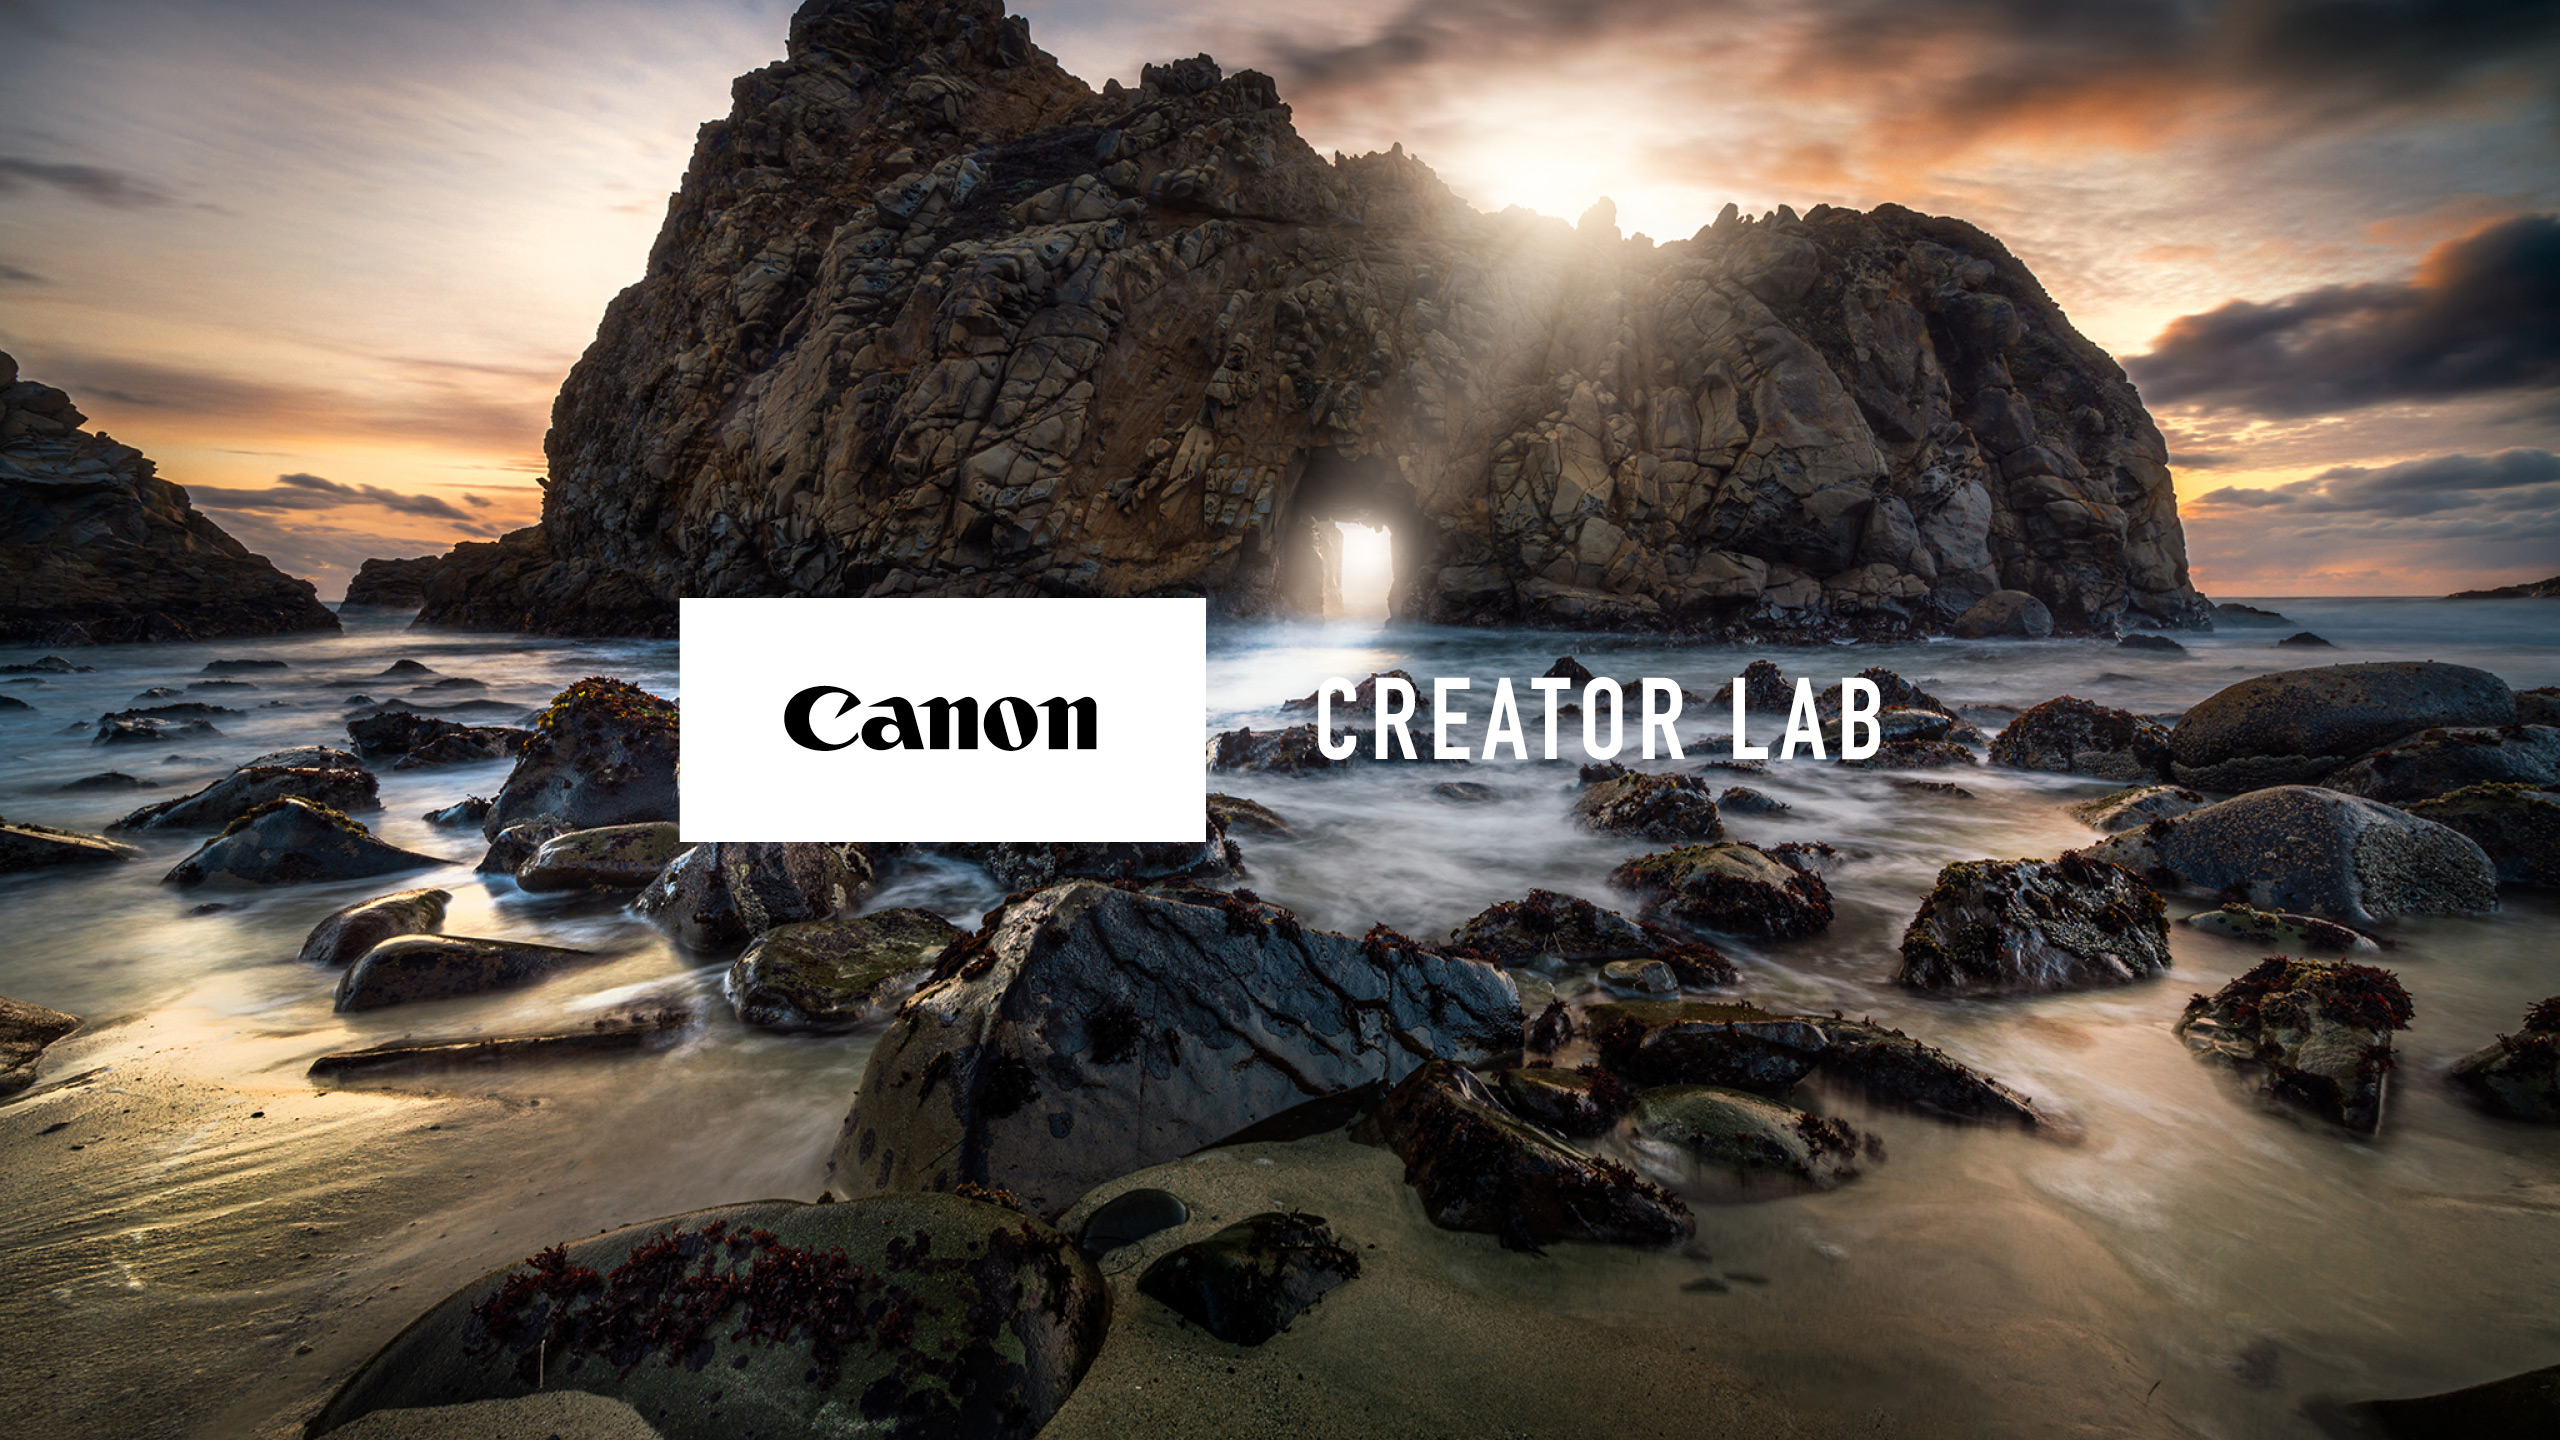 Canon Creator Lab